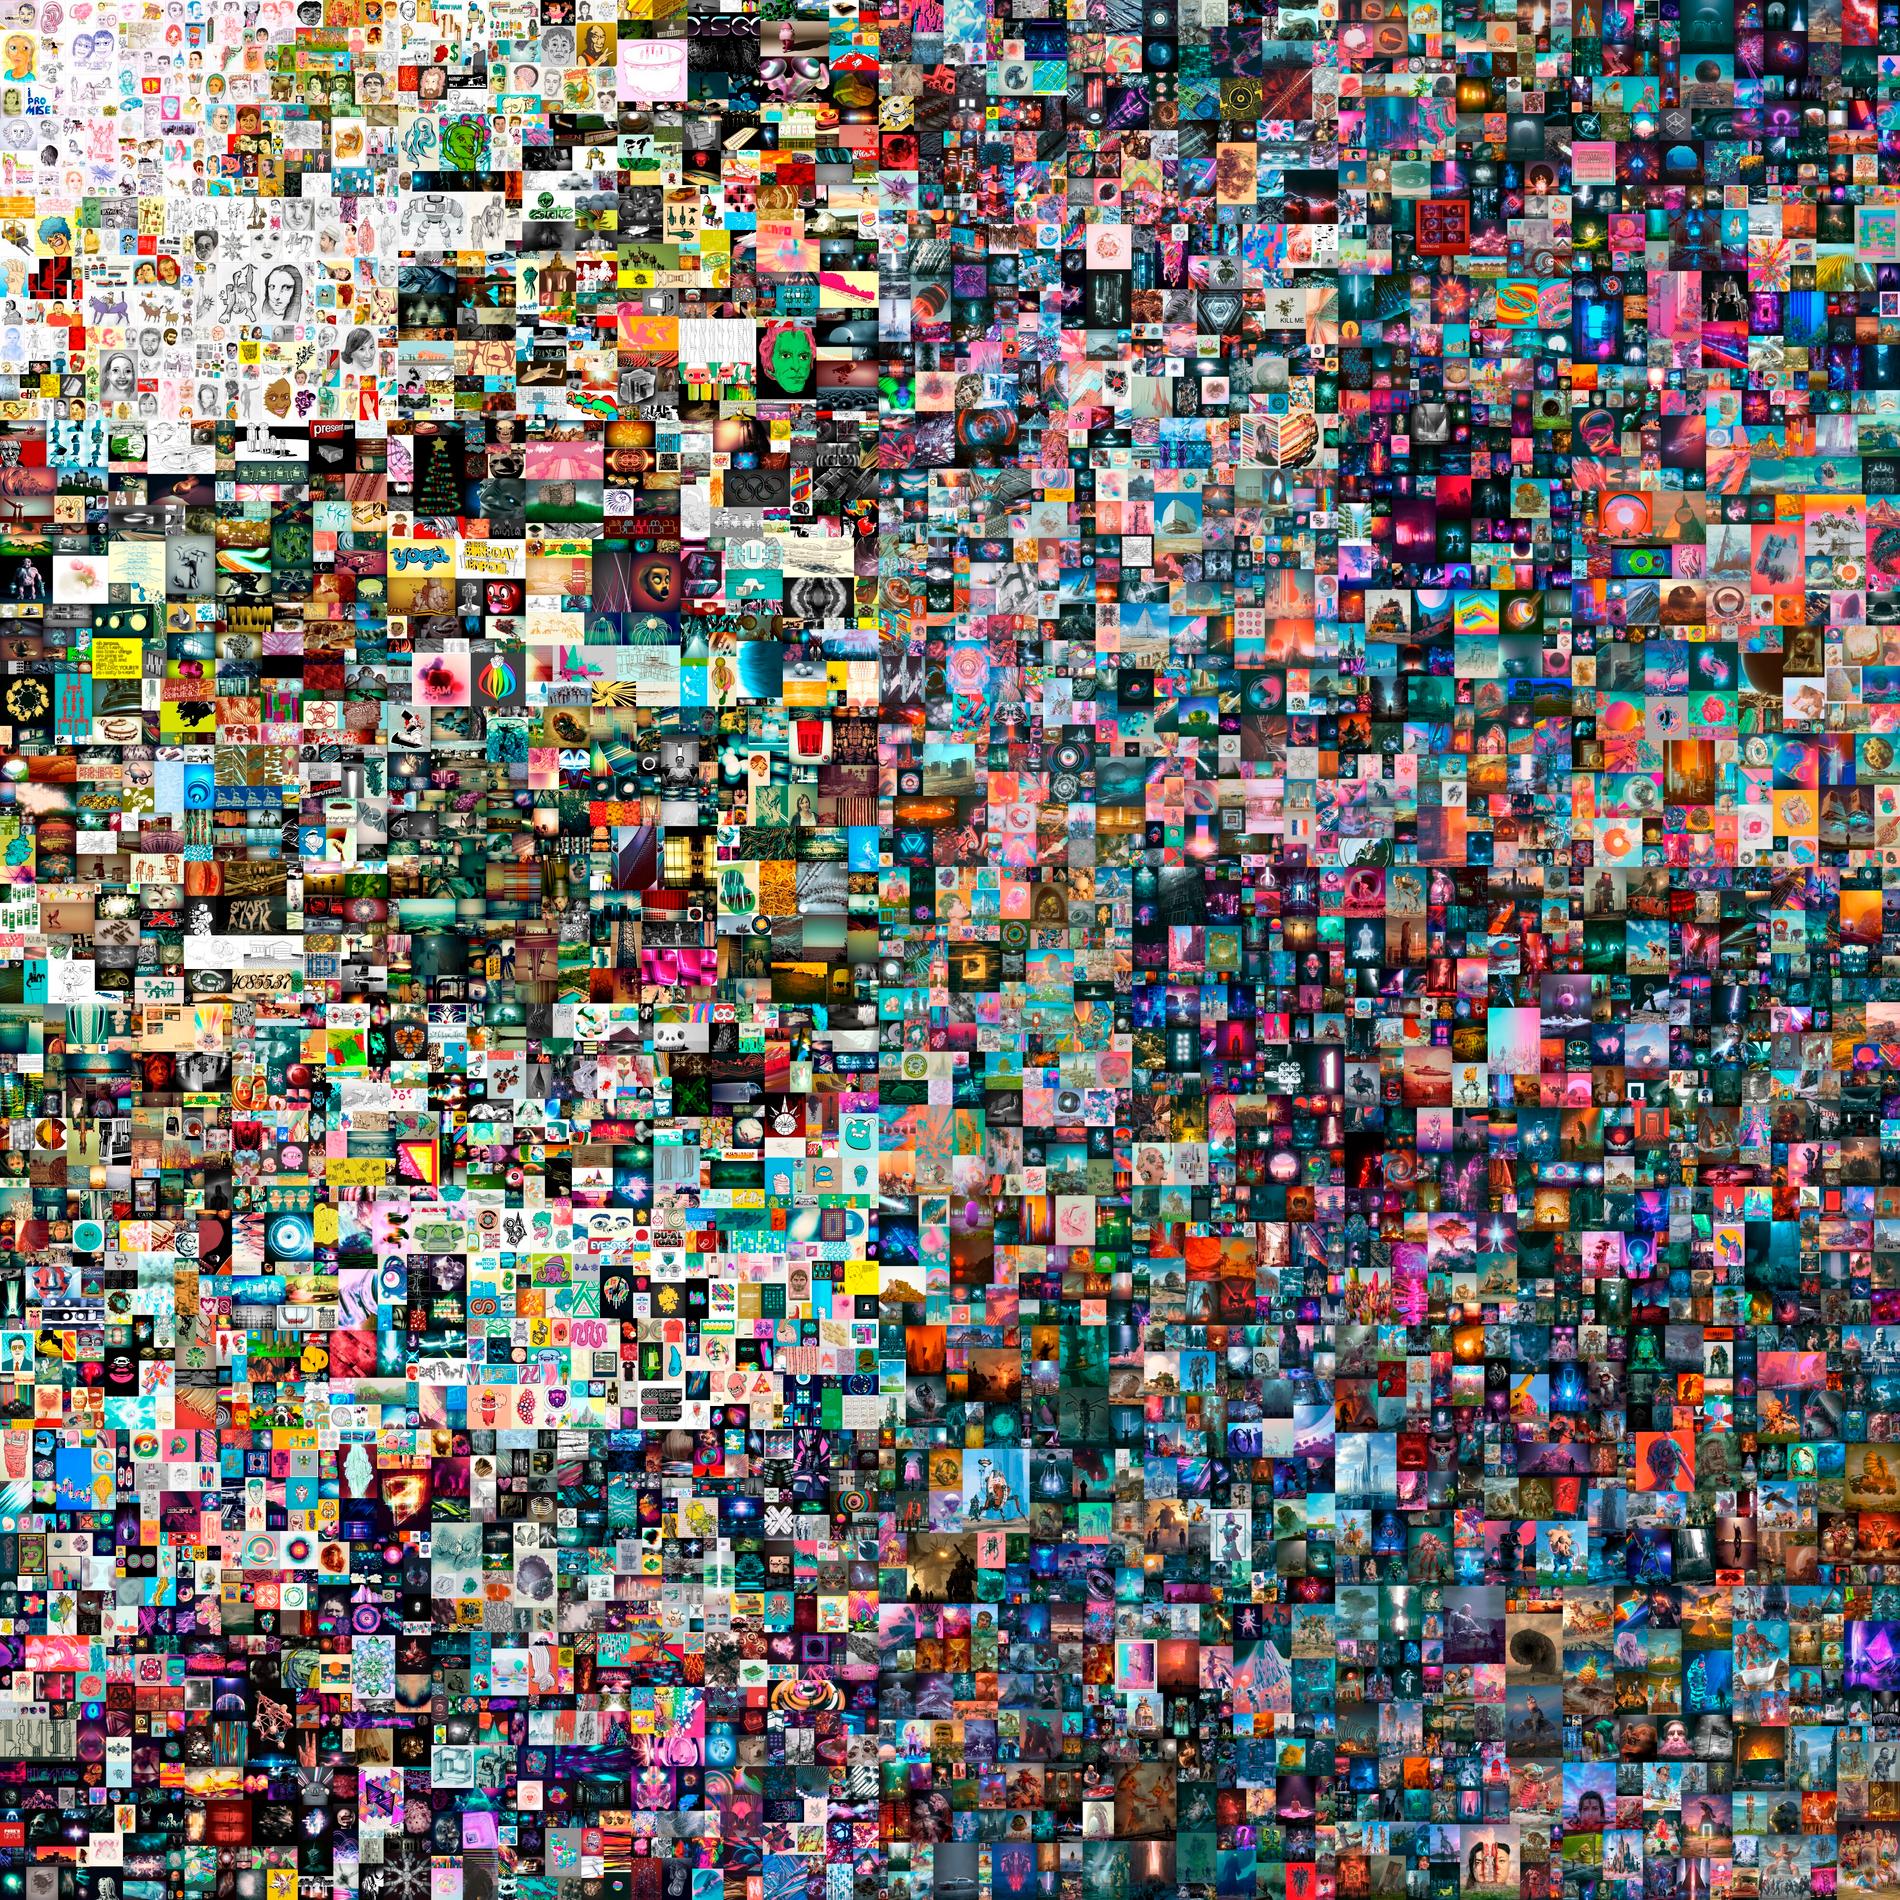 Det digitala konstverket “Everydays: The First 5,000 Days," av konstnären som kallar sig Beeple såldes för 69 miljoner dollar. Arkivbild från mars 2021.